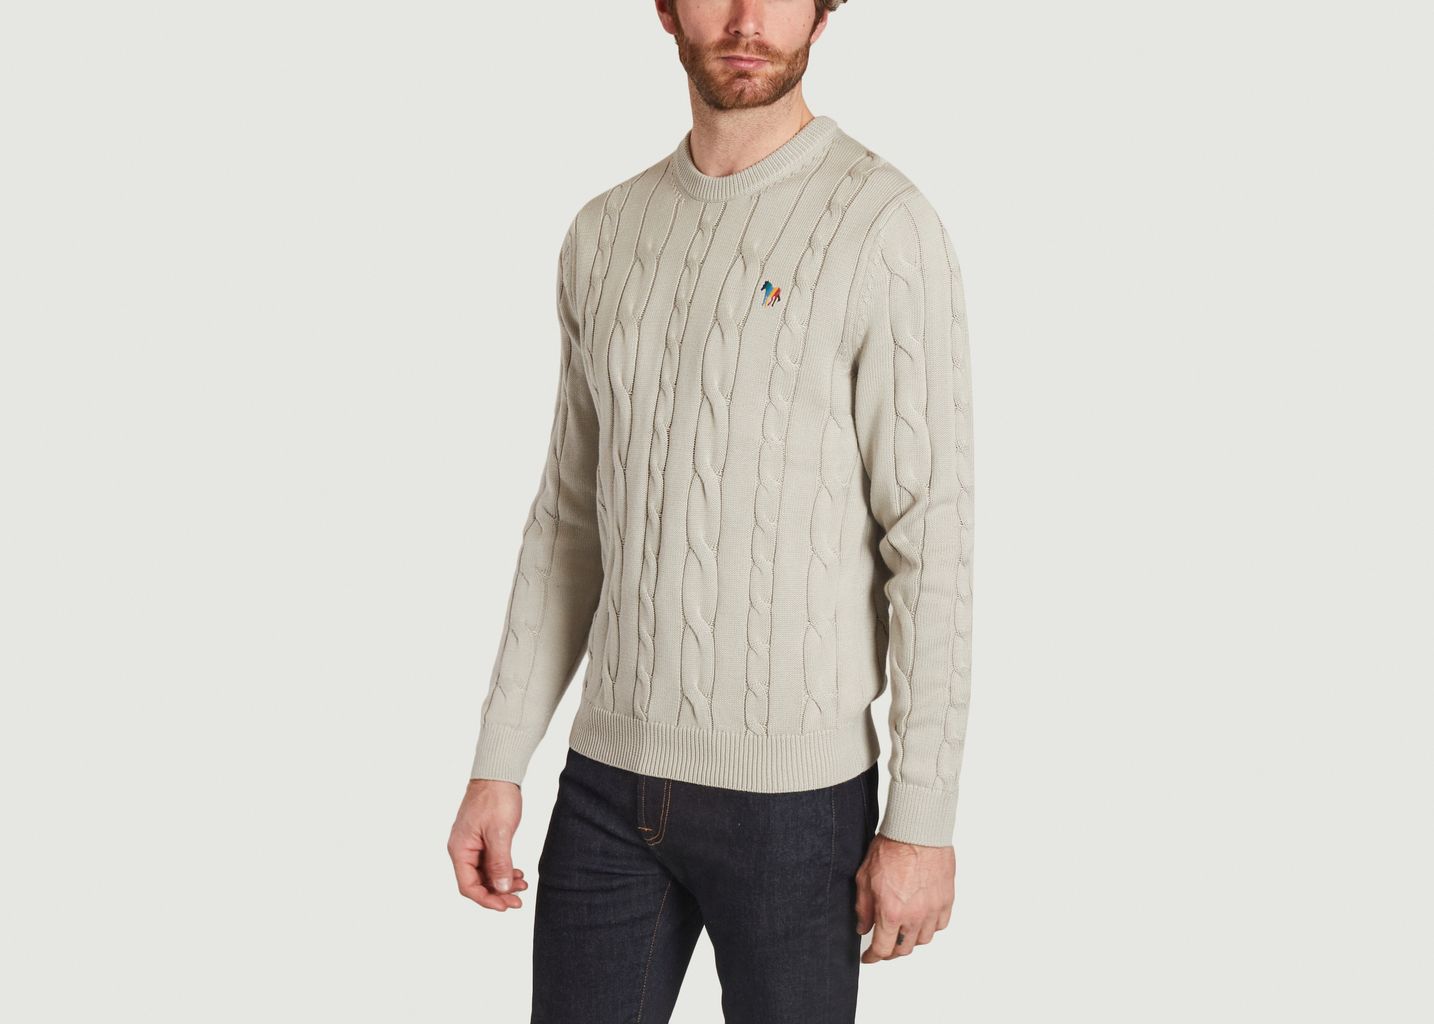 Broad Stripe Zebra Knitwear Sweater - PS by PAUL SMITH